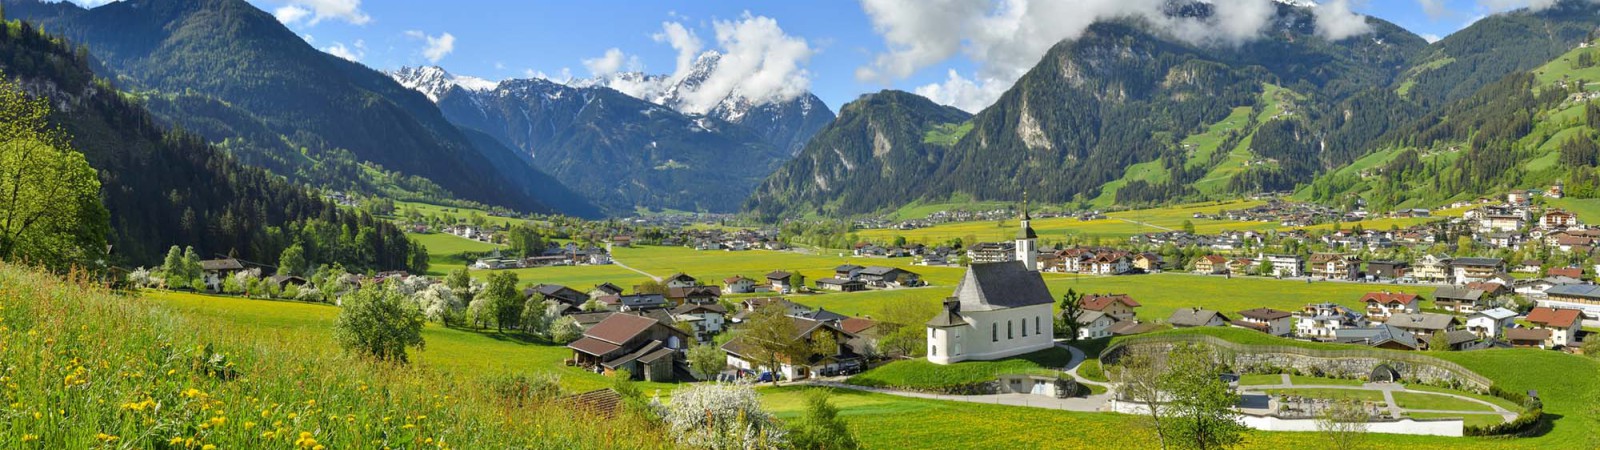 Mayrhofen - hippach - zillertal